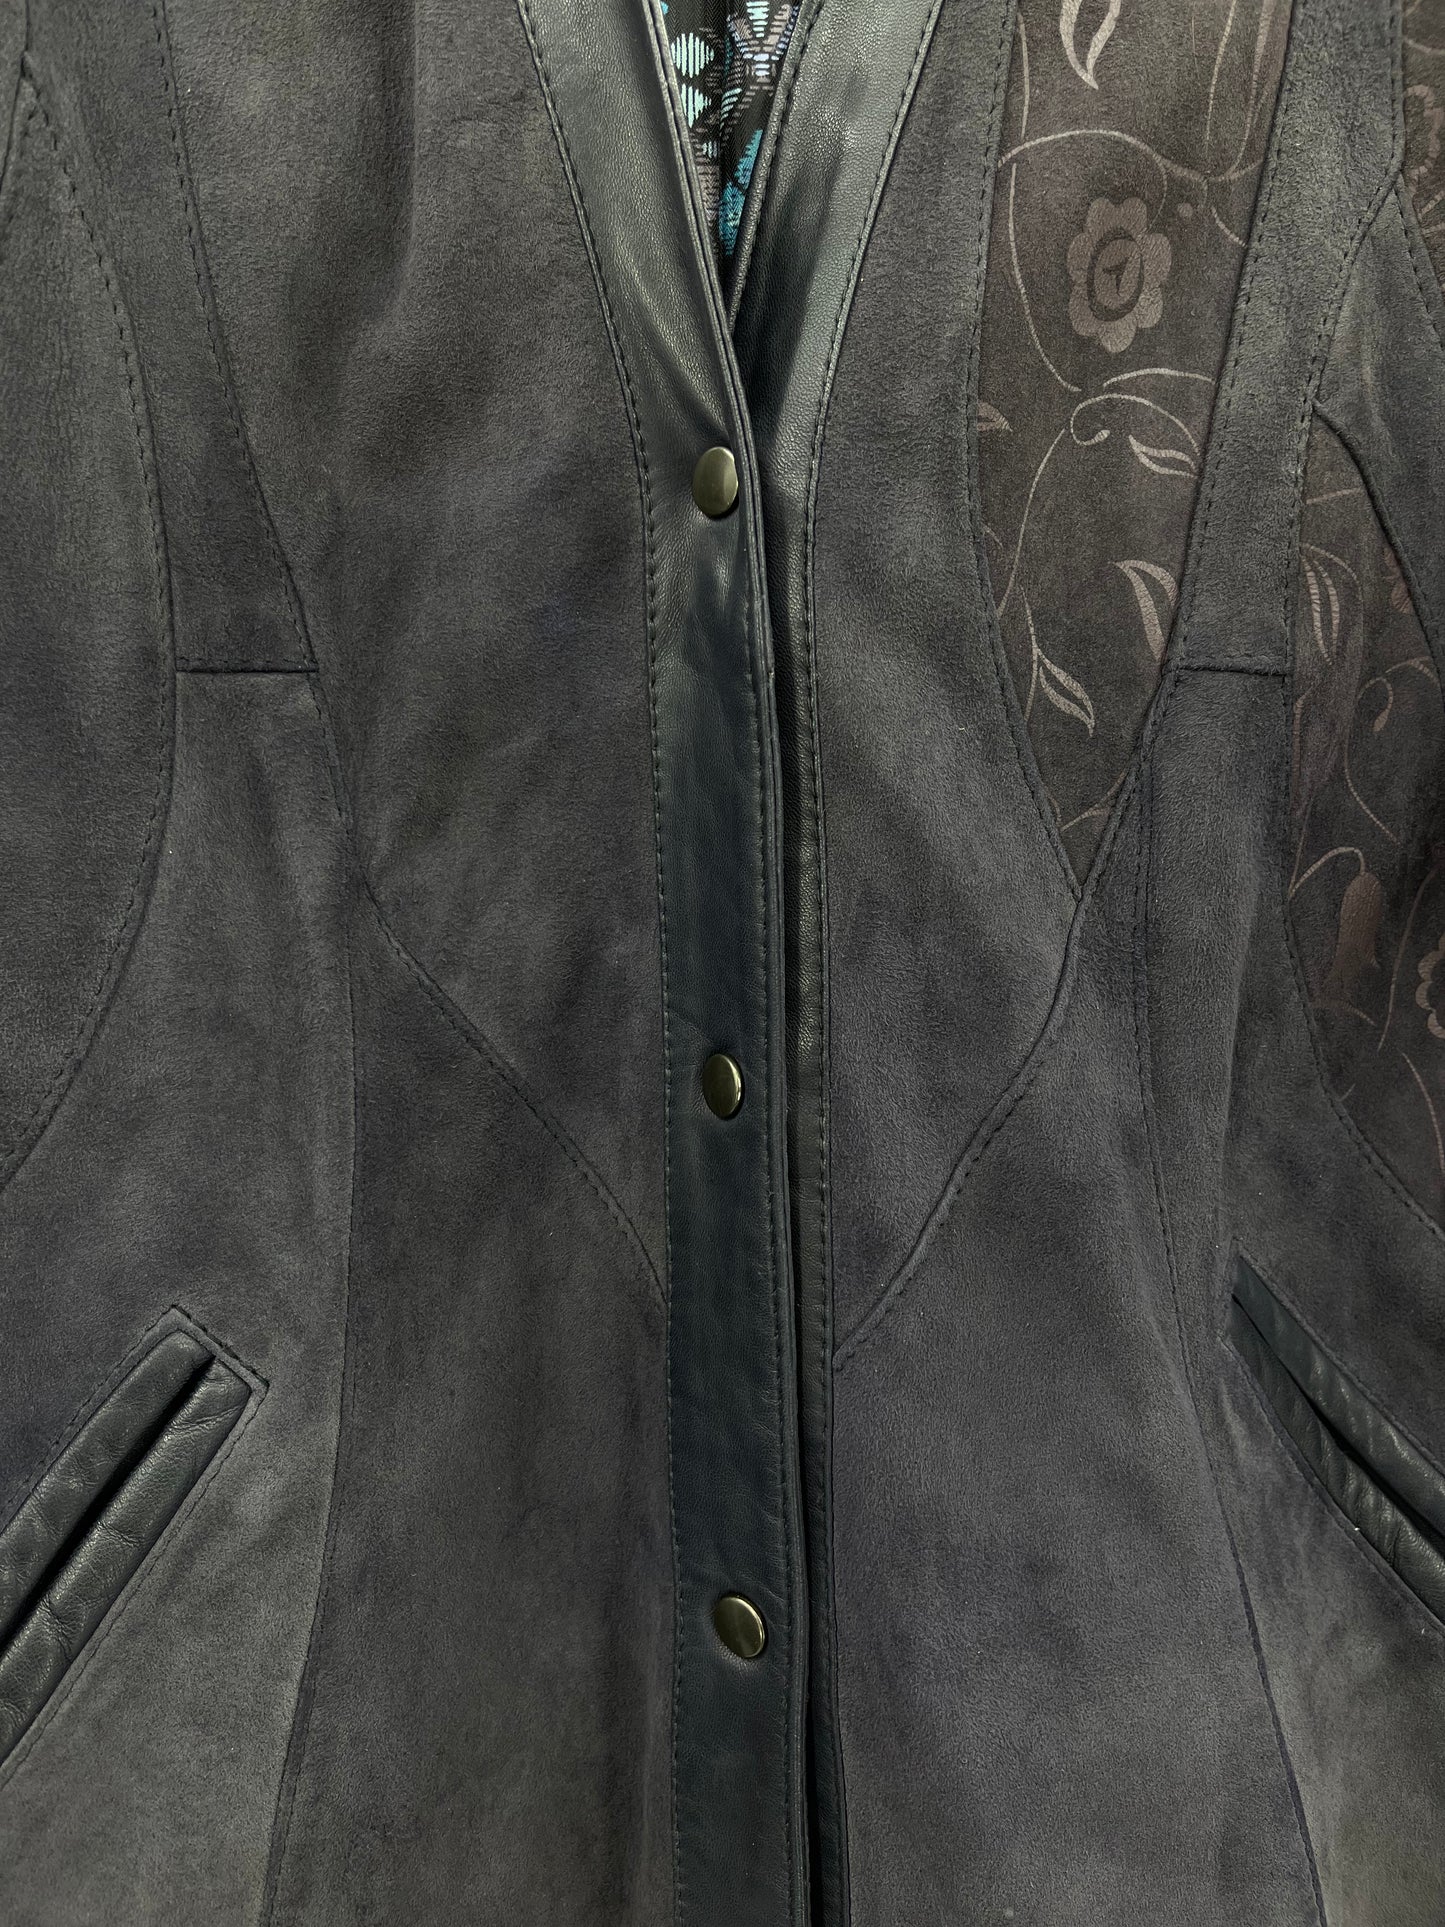 Salmi-Leather, sinertävän harmaa mokkanahkatakki, 80-90-luku, koko 34-36-38